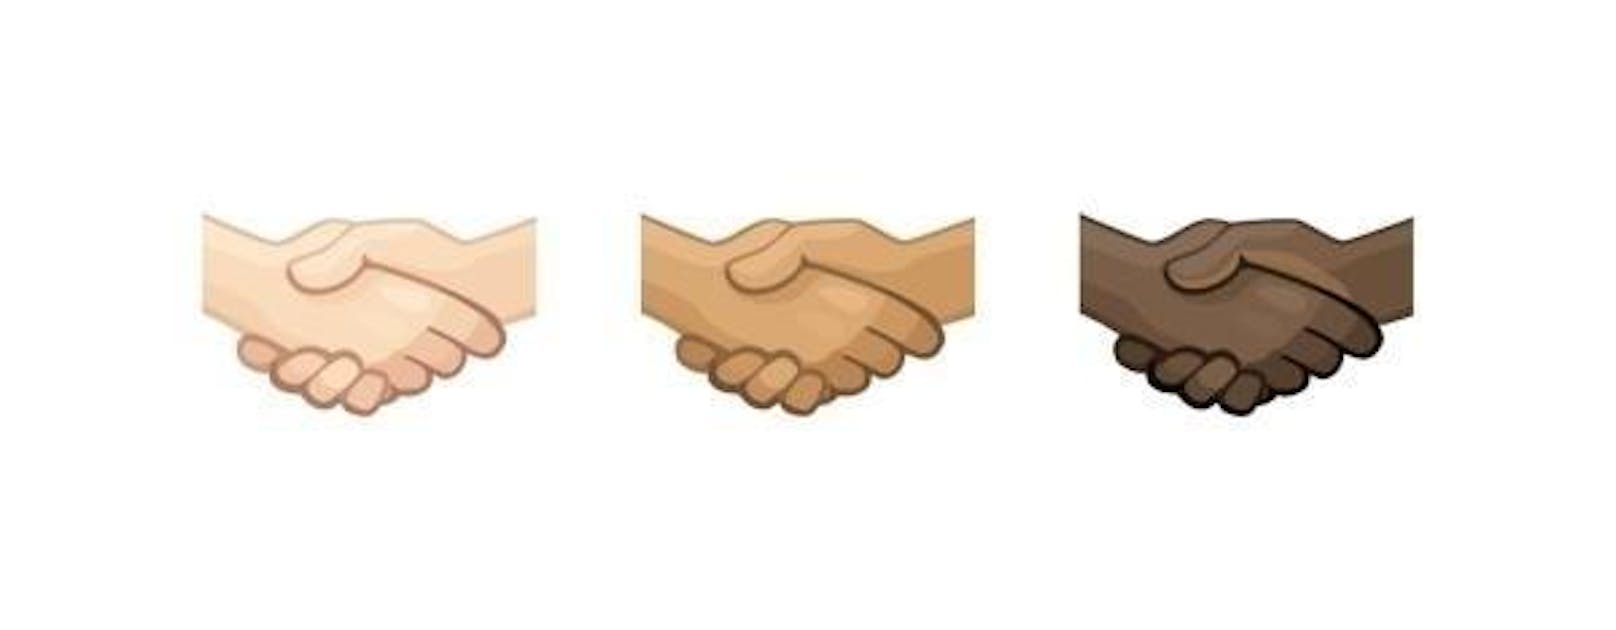 Neu sollen auch die Emojis fürs Händeschütteln verschiedene Hauttöne unterstützen.